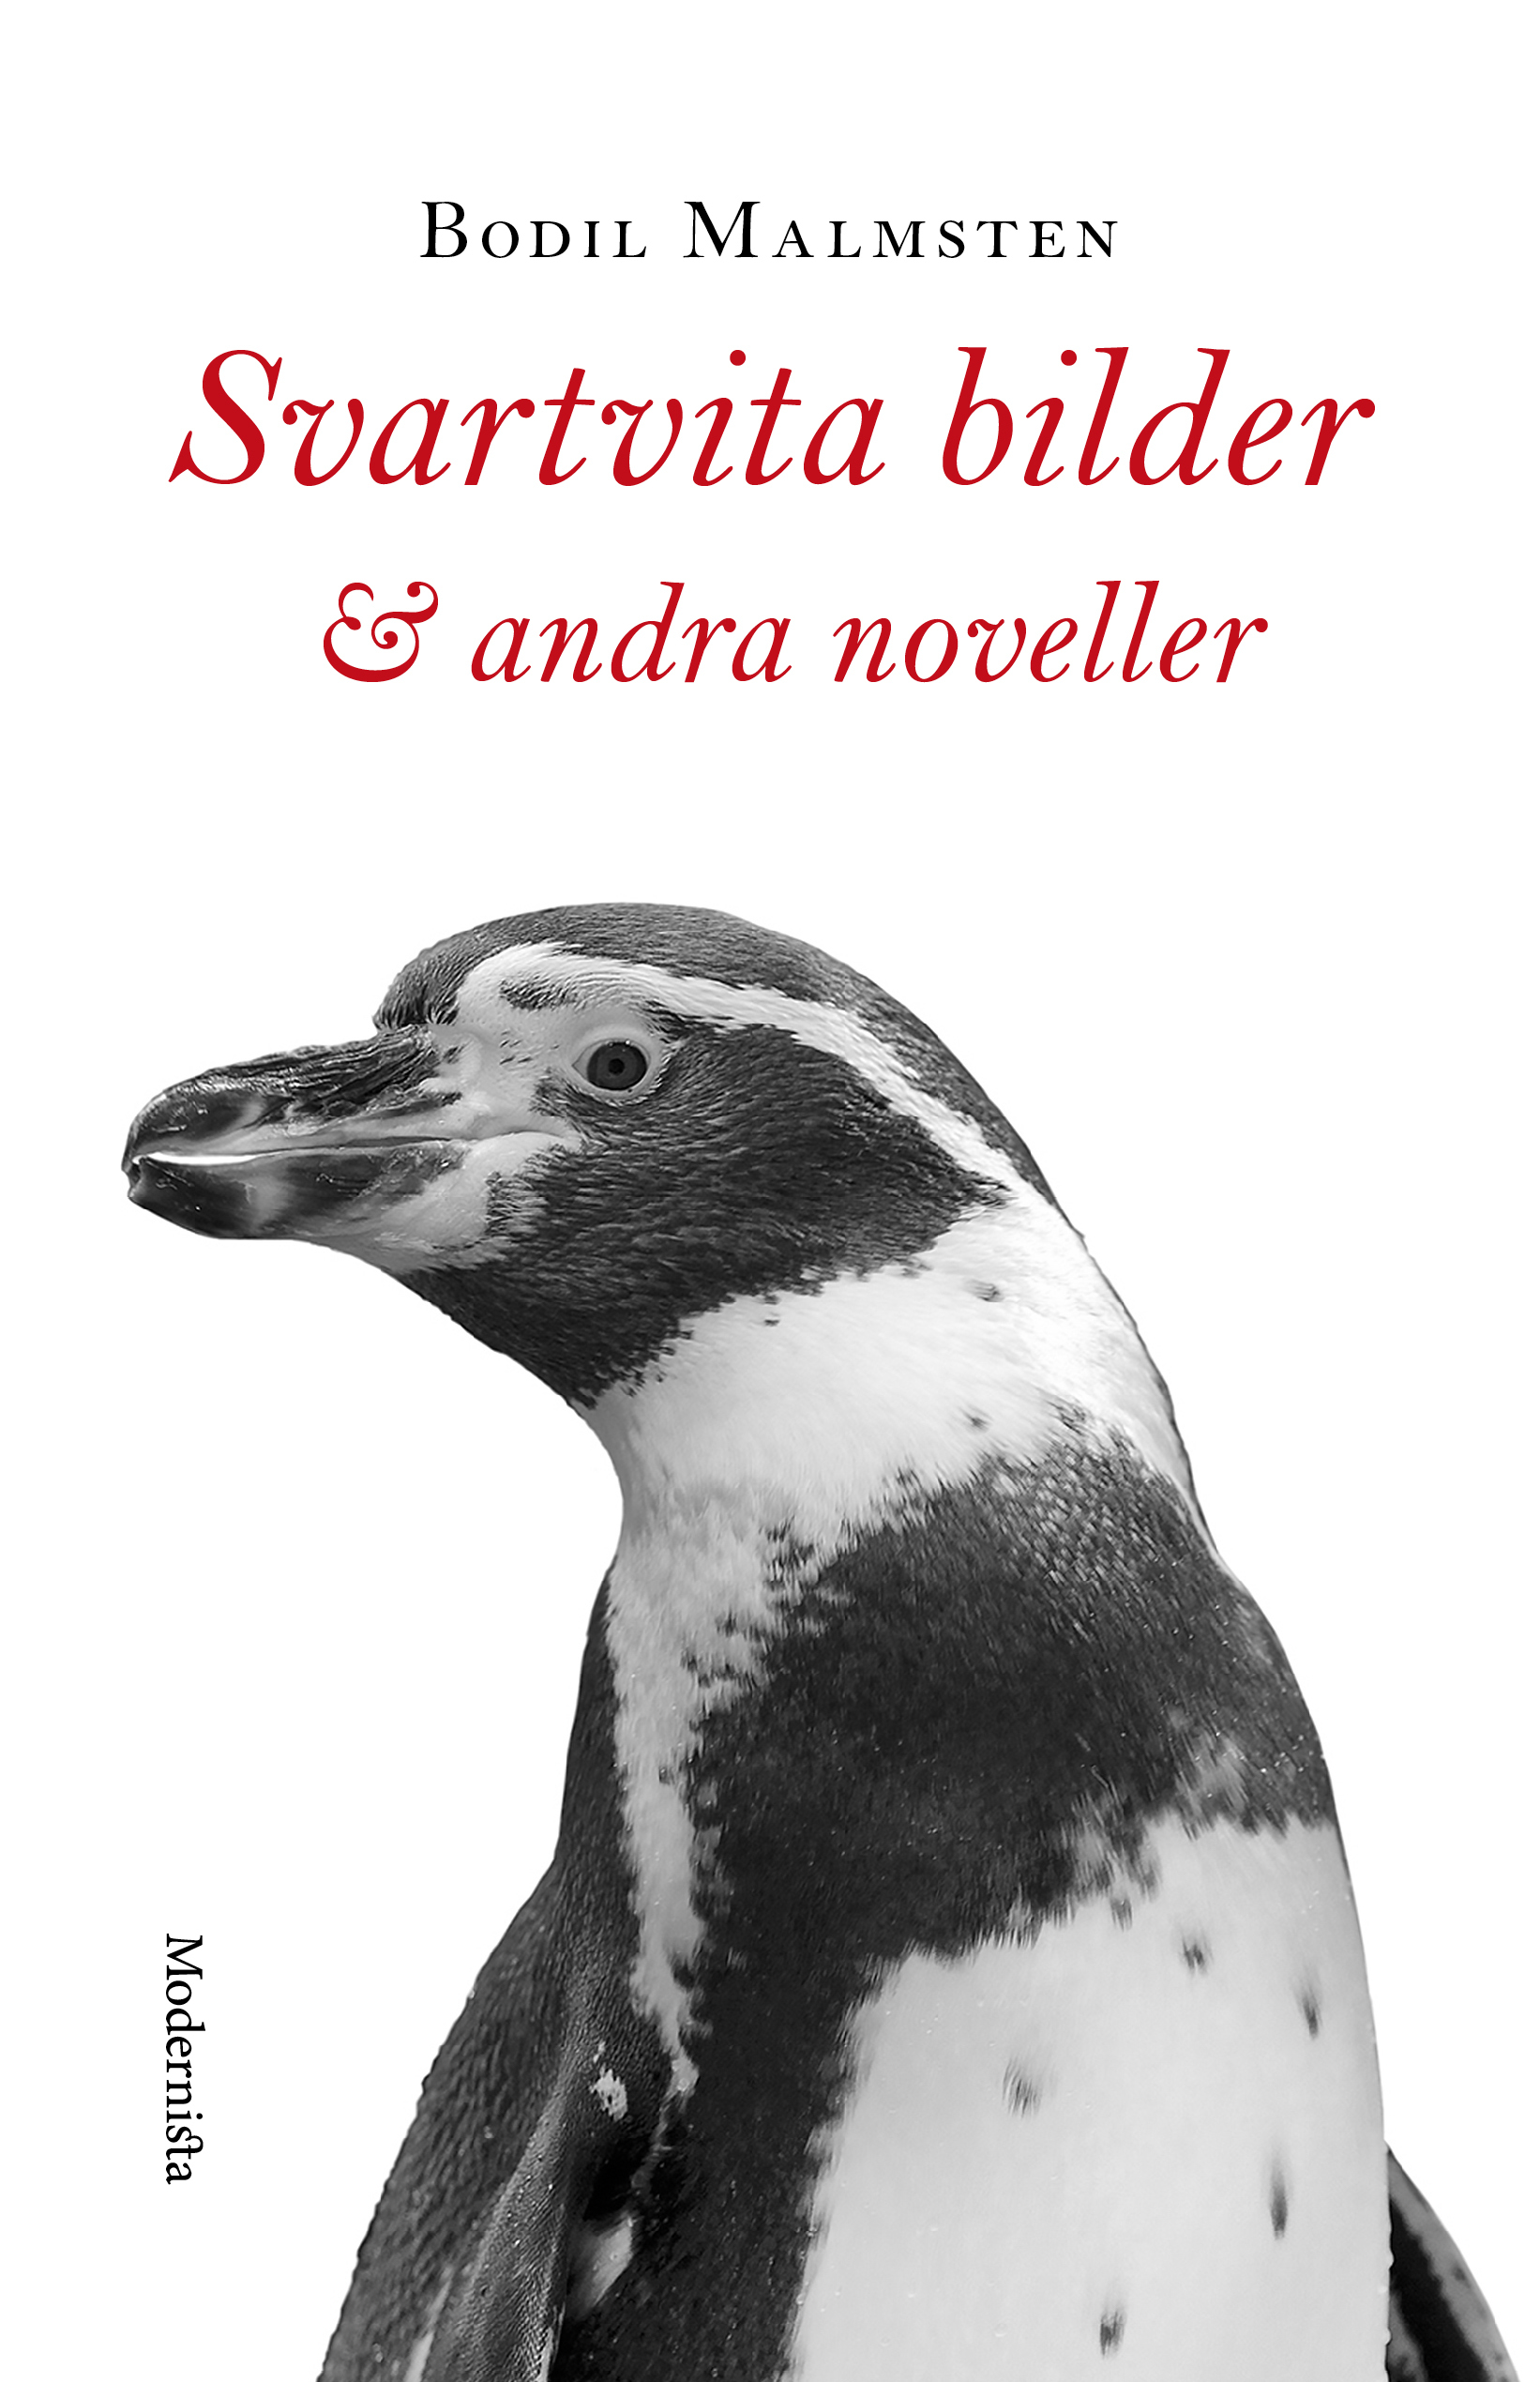 Bodil Malmsten: Svartvita bilder & andra noveller (Hardcover, Modernista)